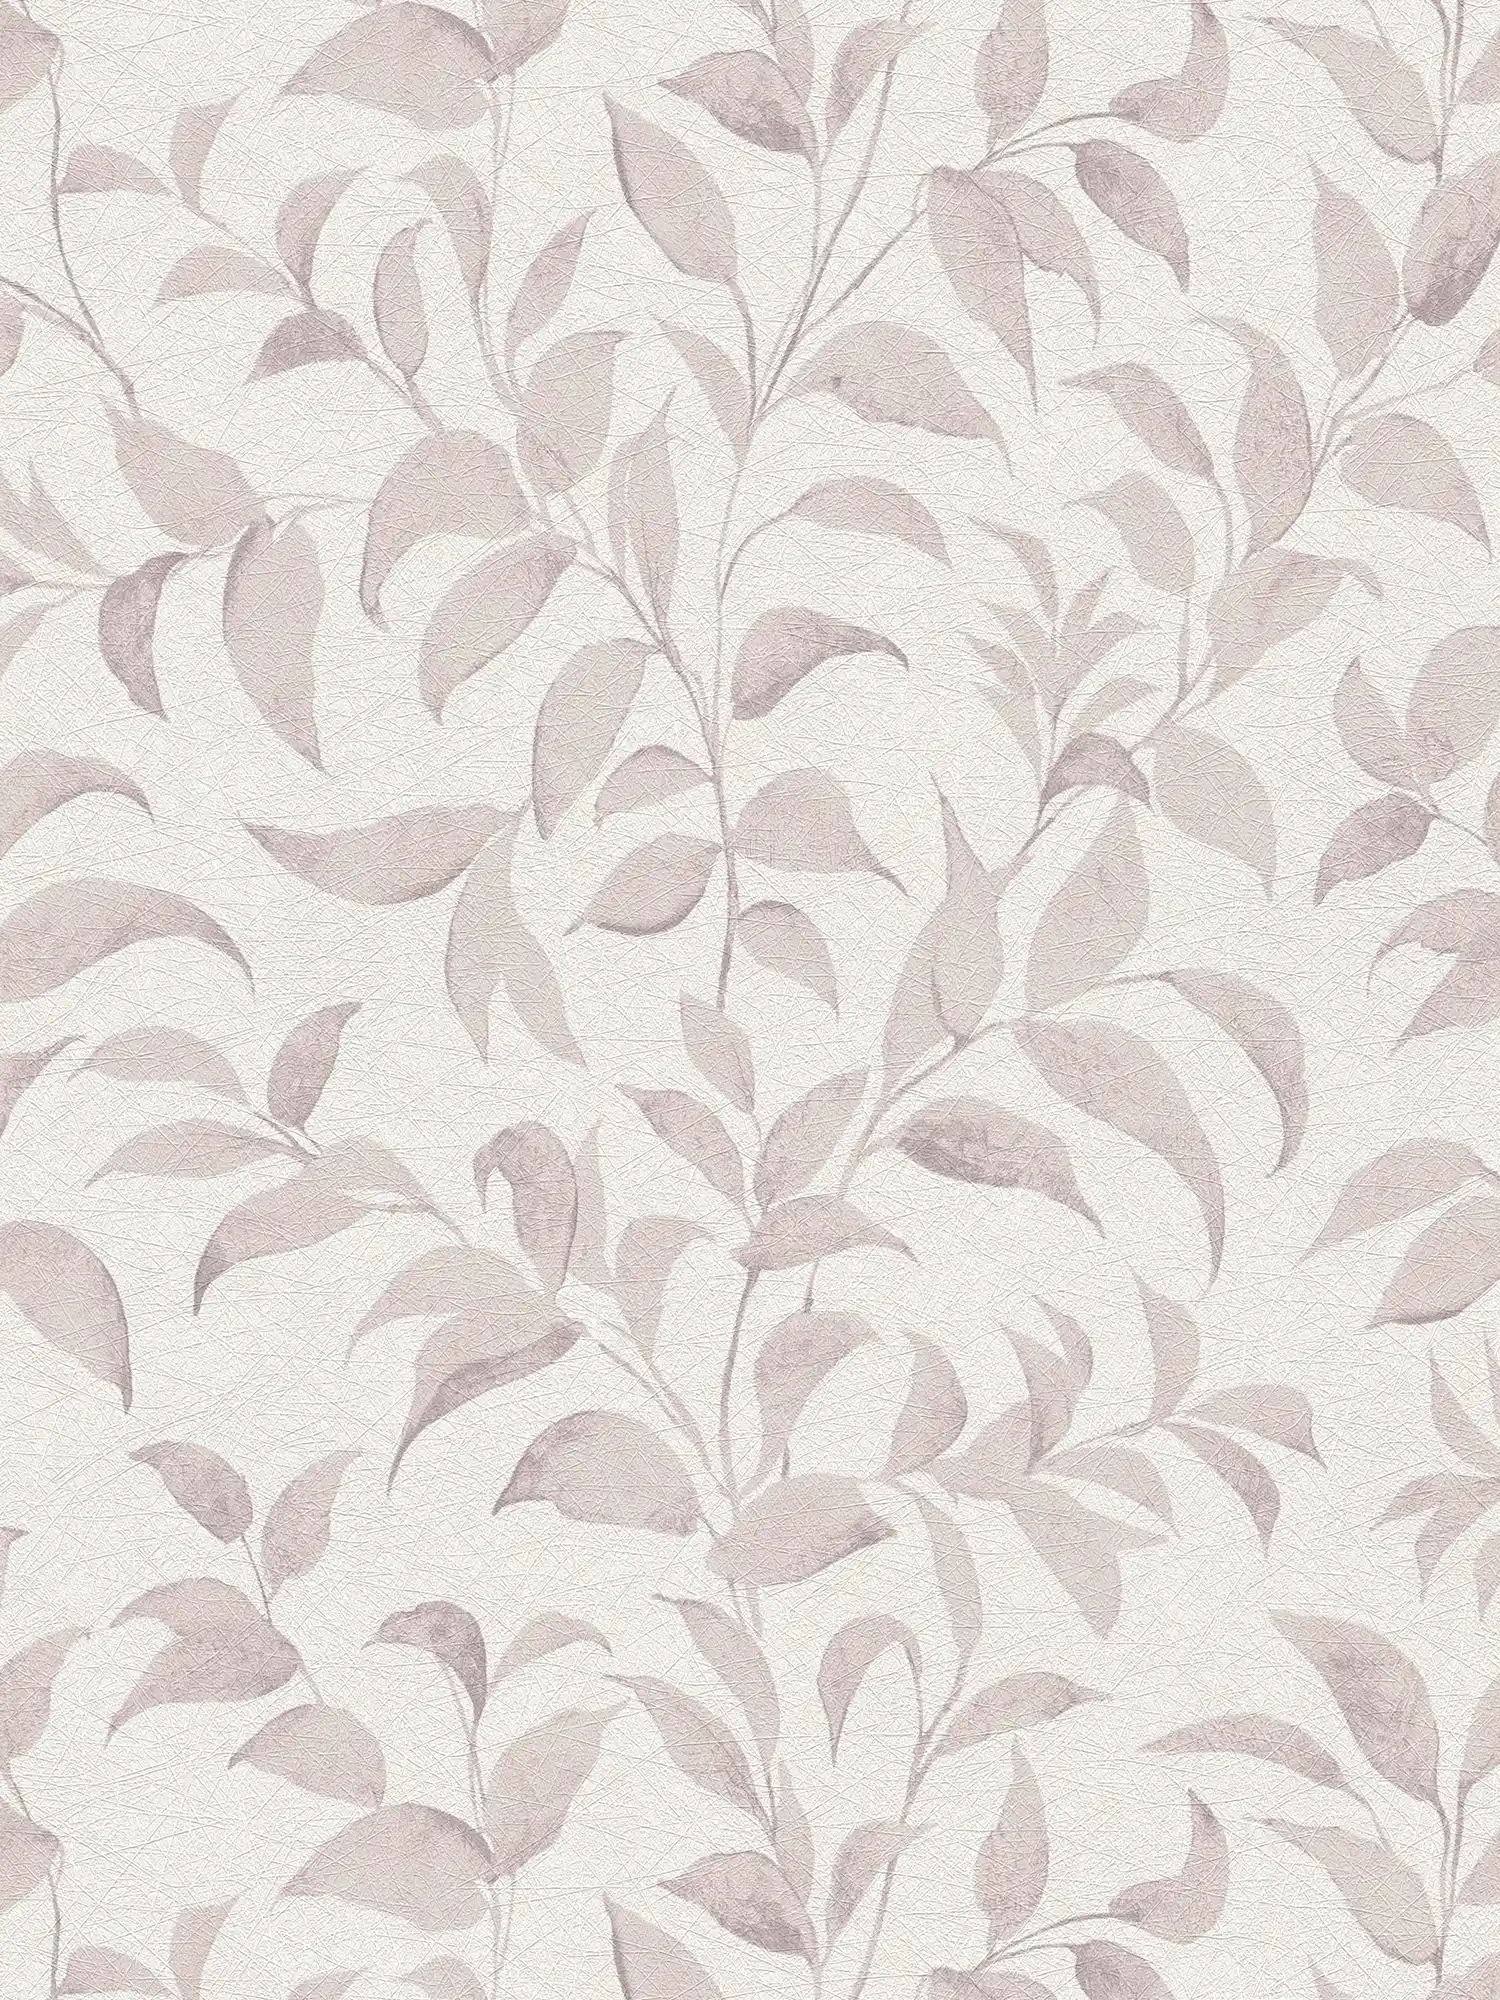 papier peint en papier floral avec feuilles structuré chatoyant - blanc, beige, gris
